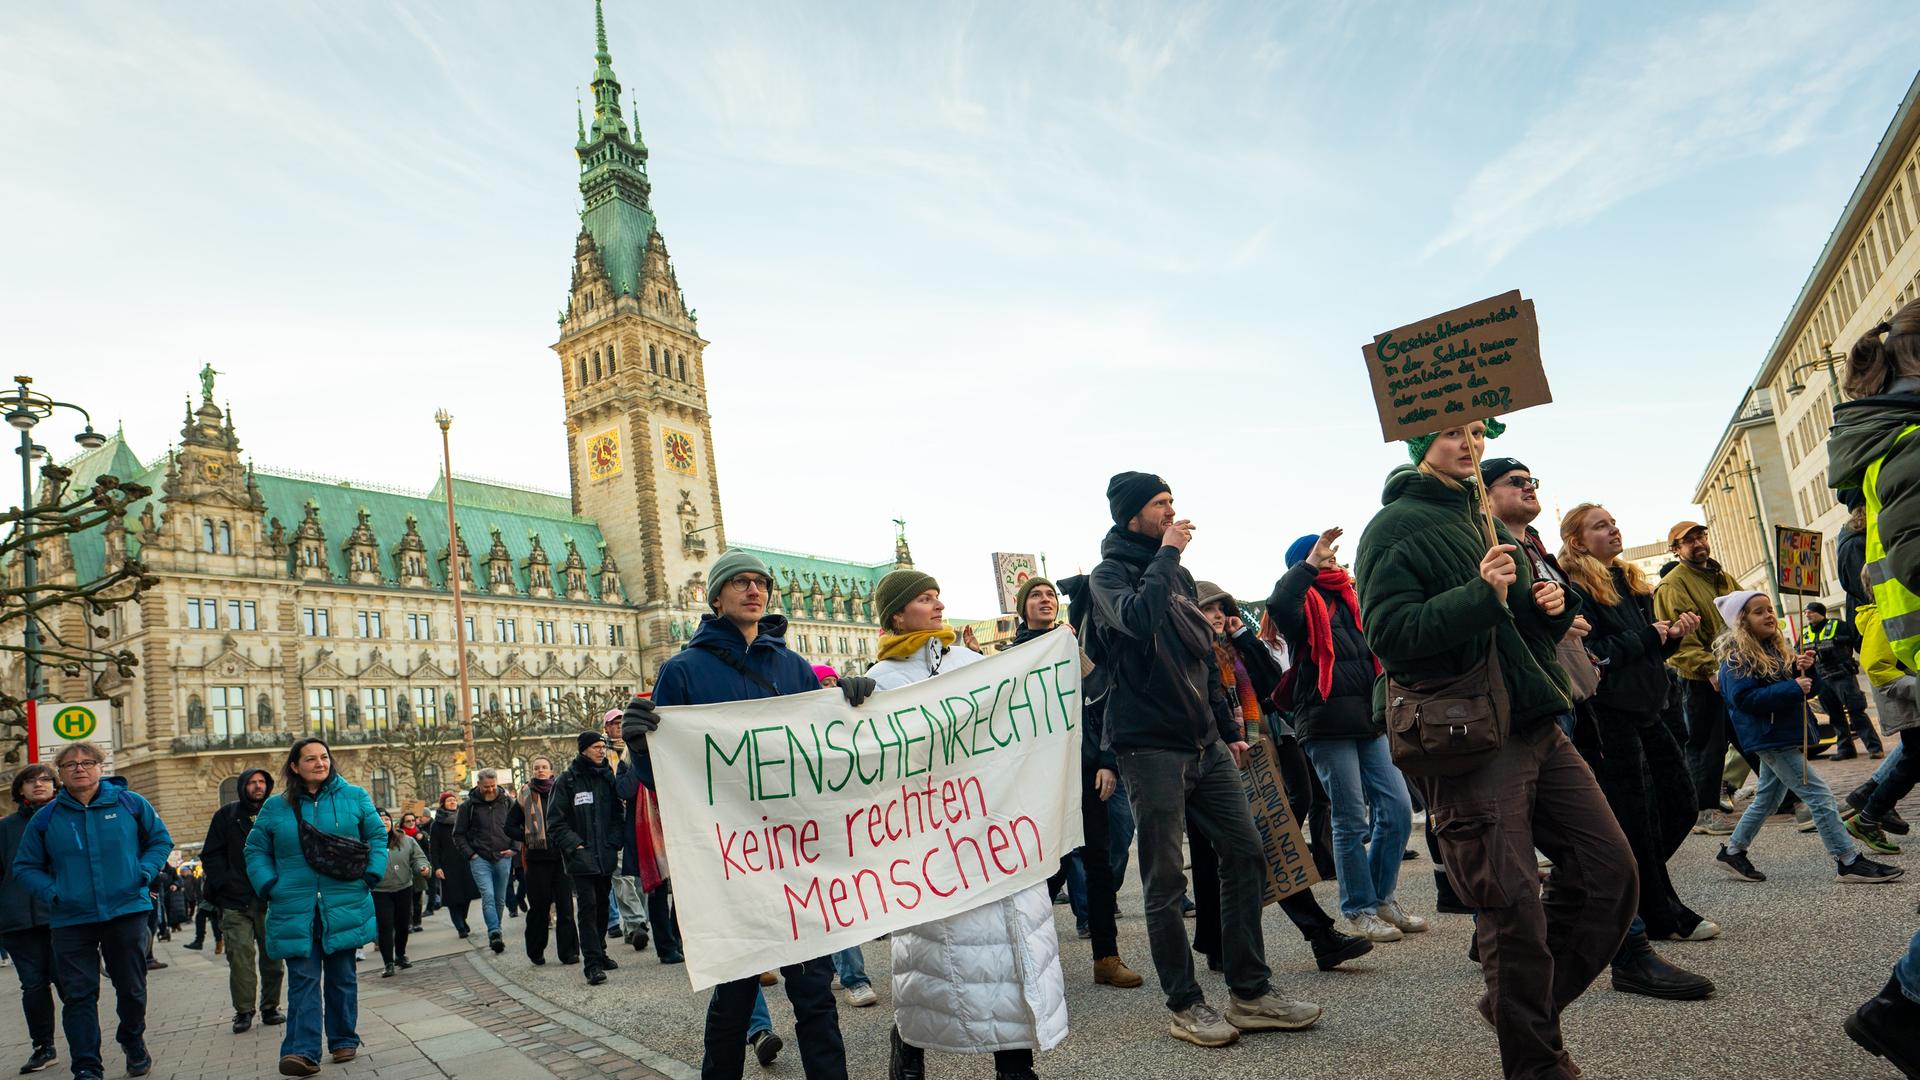 Demonstranten ziehen mit Plakaten unter anderem mit der Aufschrift "Menschenrechte - keine rechten Menschen" vor dem Hamburger Rathaus entlang.